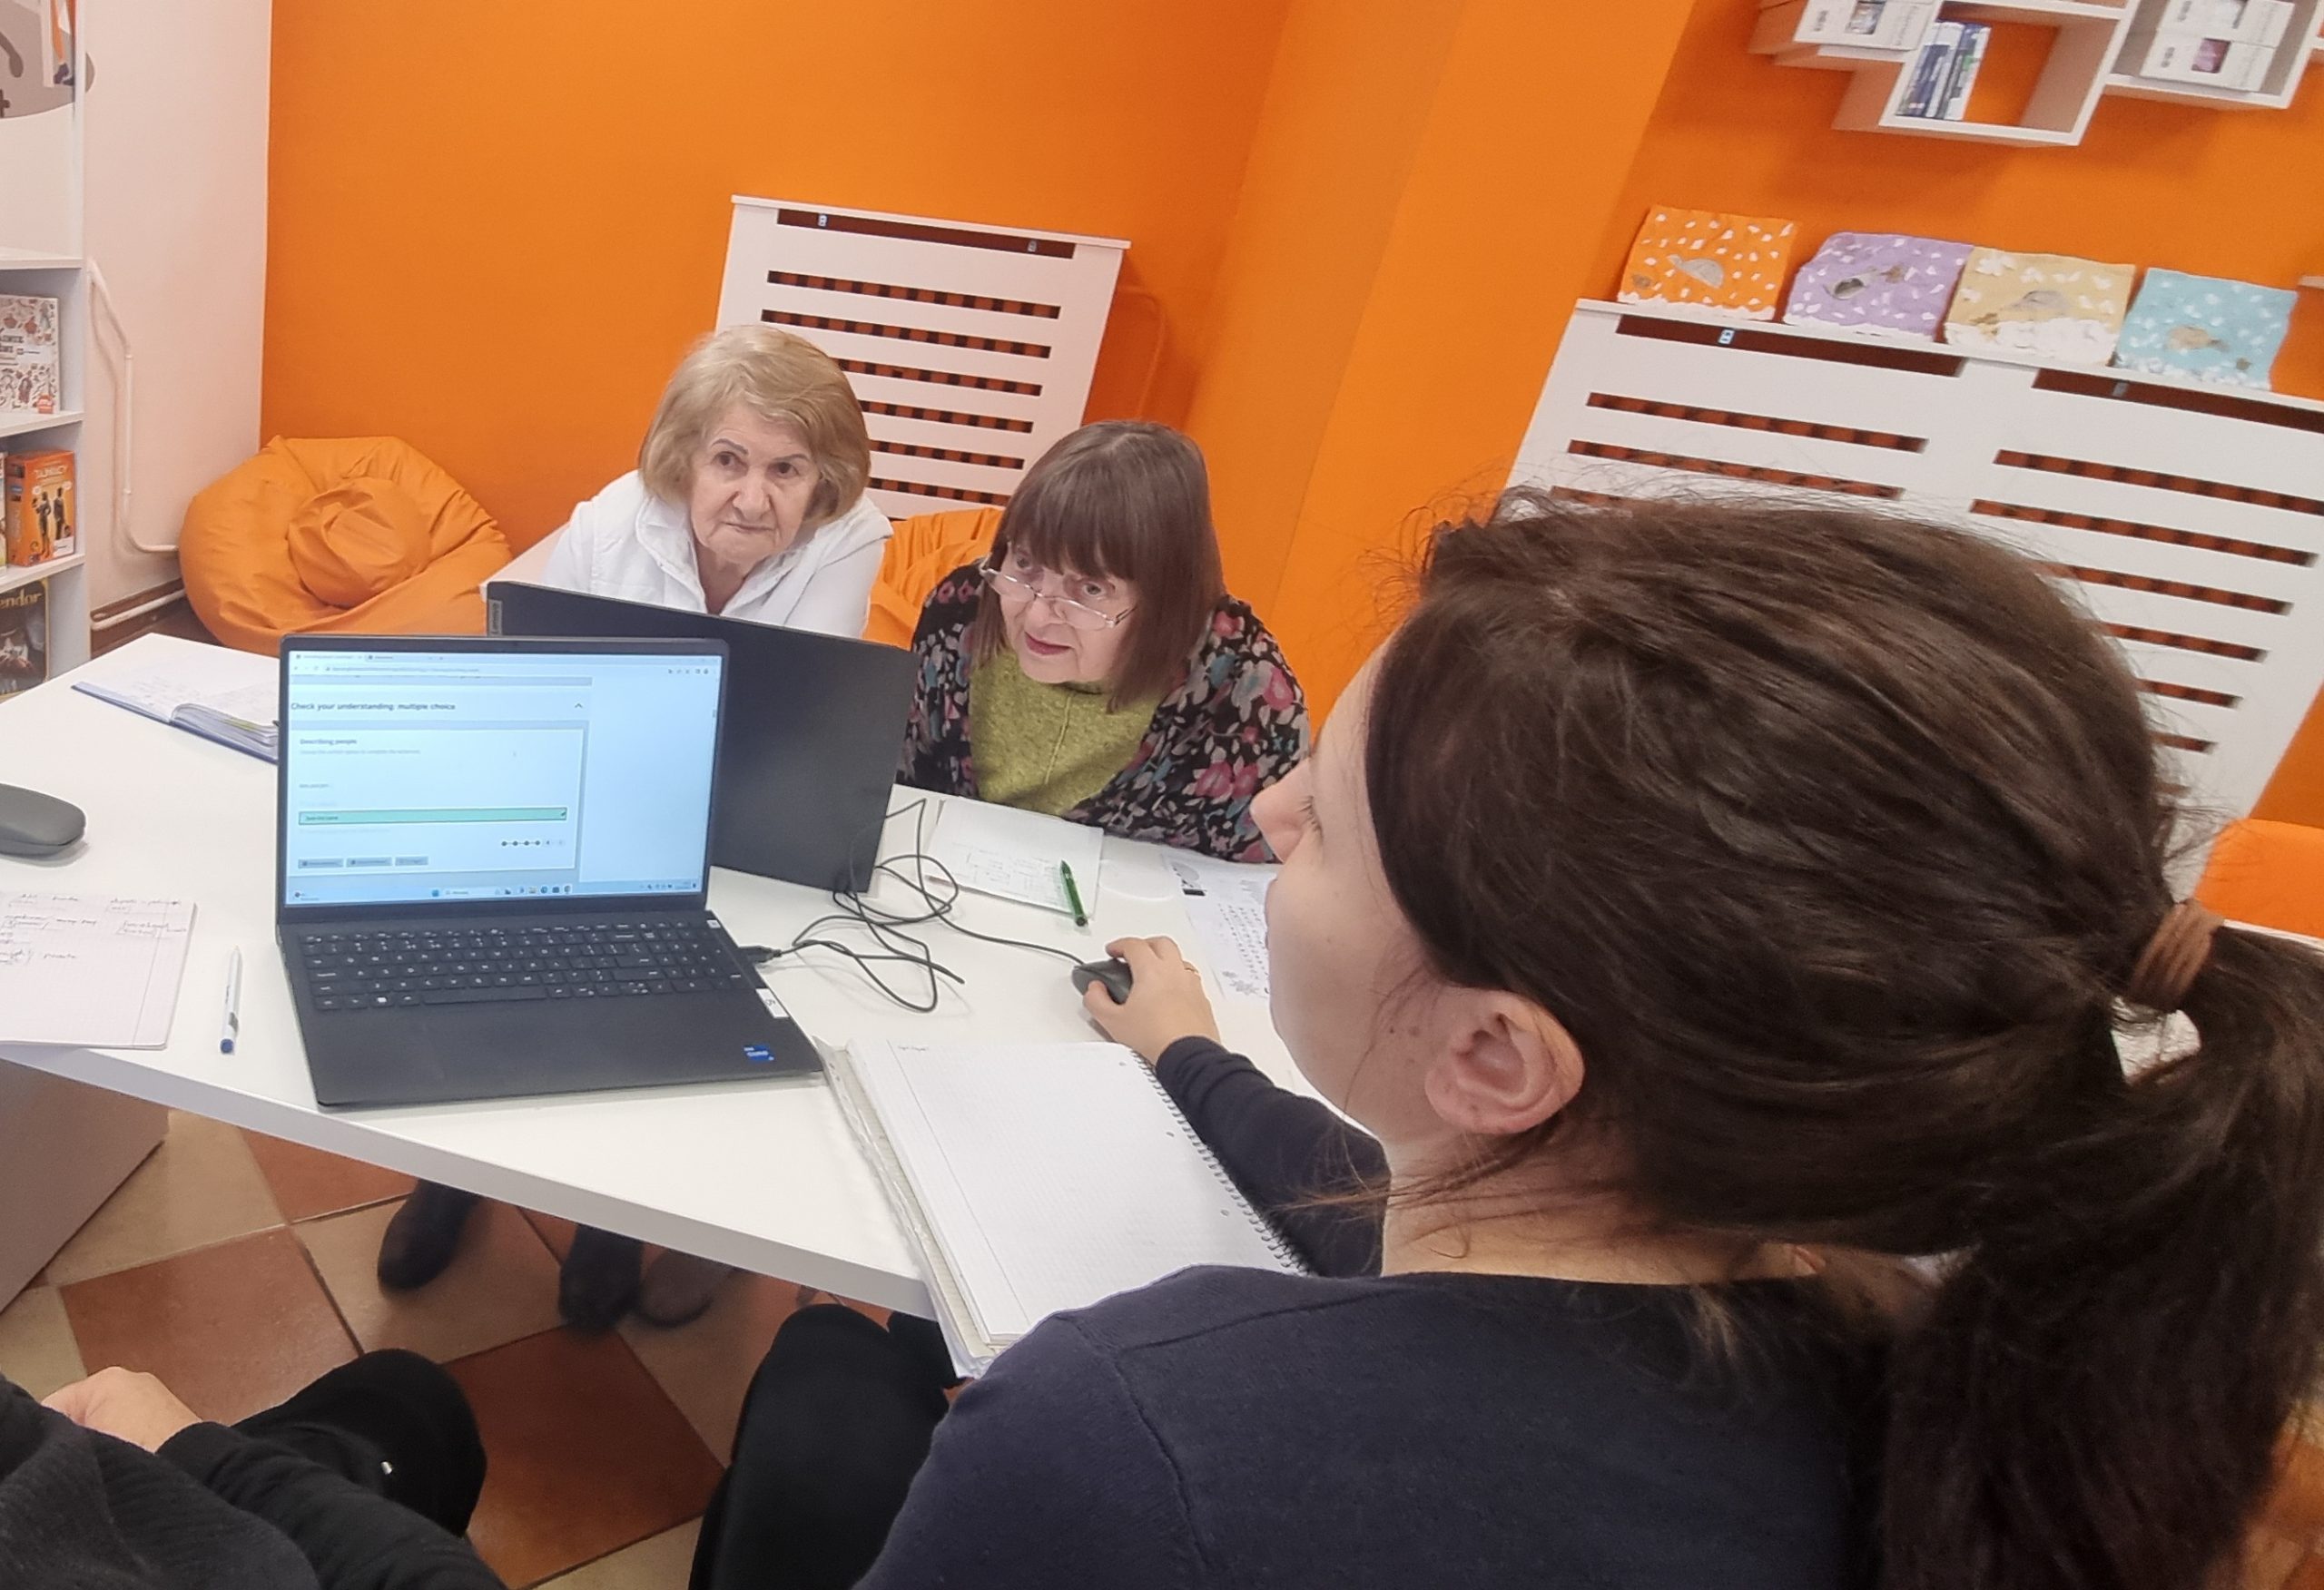 zdjęcie czytelniczek podczas rozwiązywania zadań na laptopach w pracowni orange